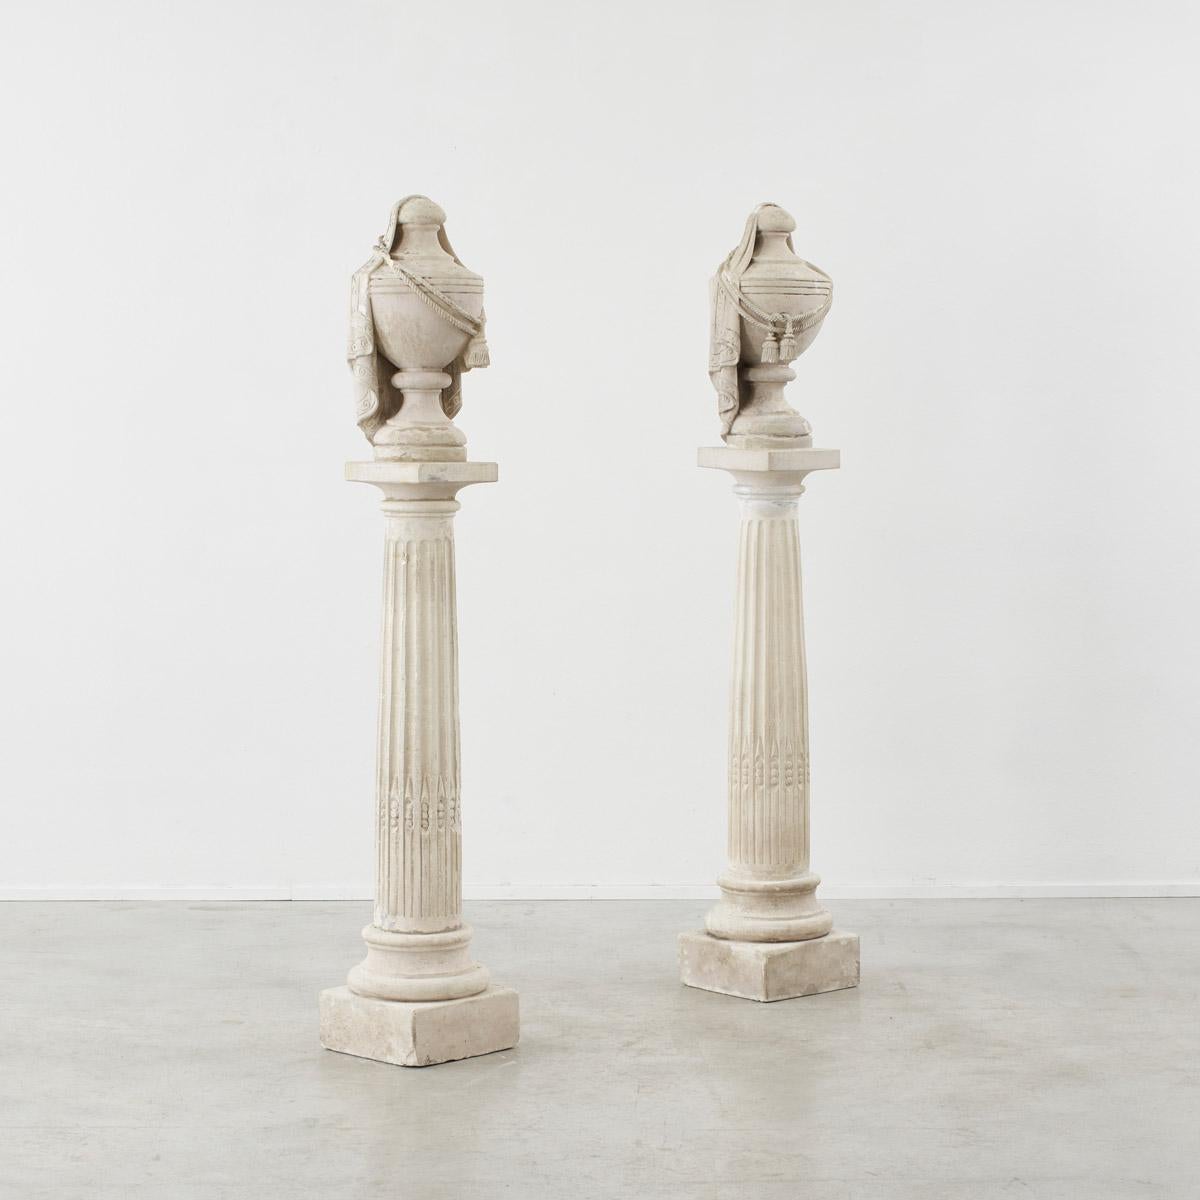 Une paire décorative de colonnes françaises antiques classiques, avec des récipients fixés au sommet de chaque socle.